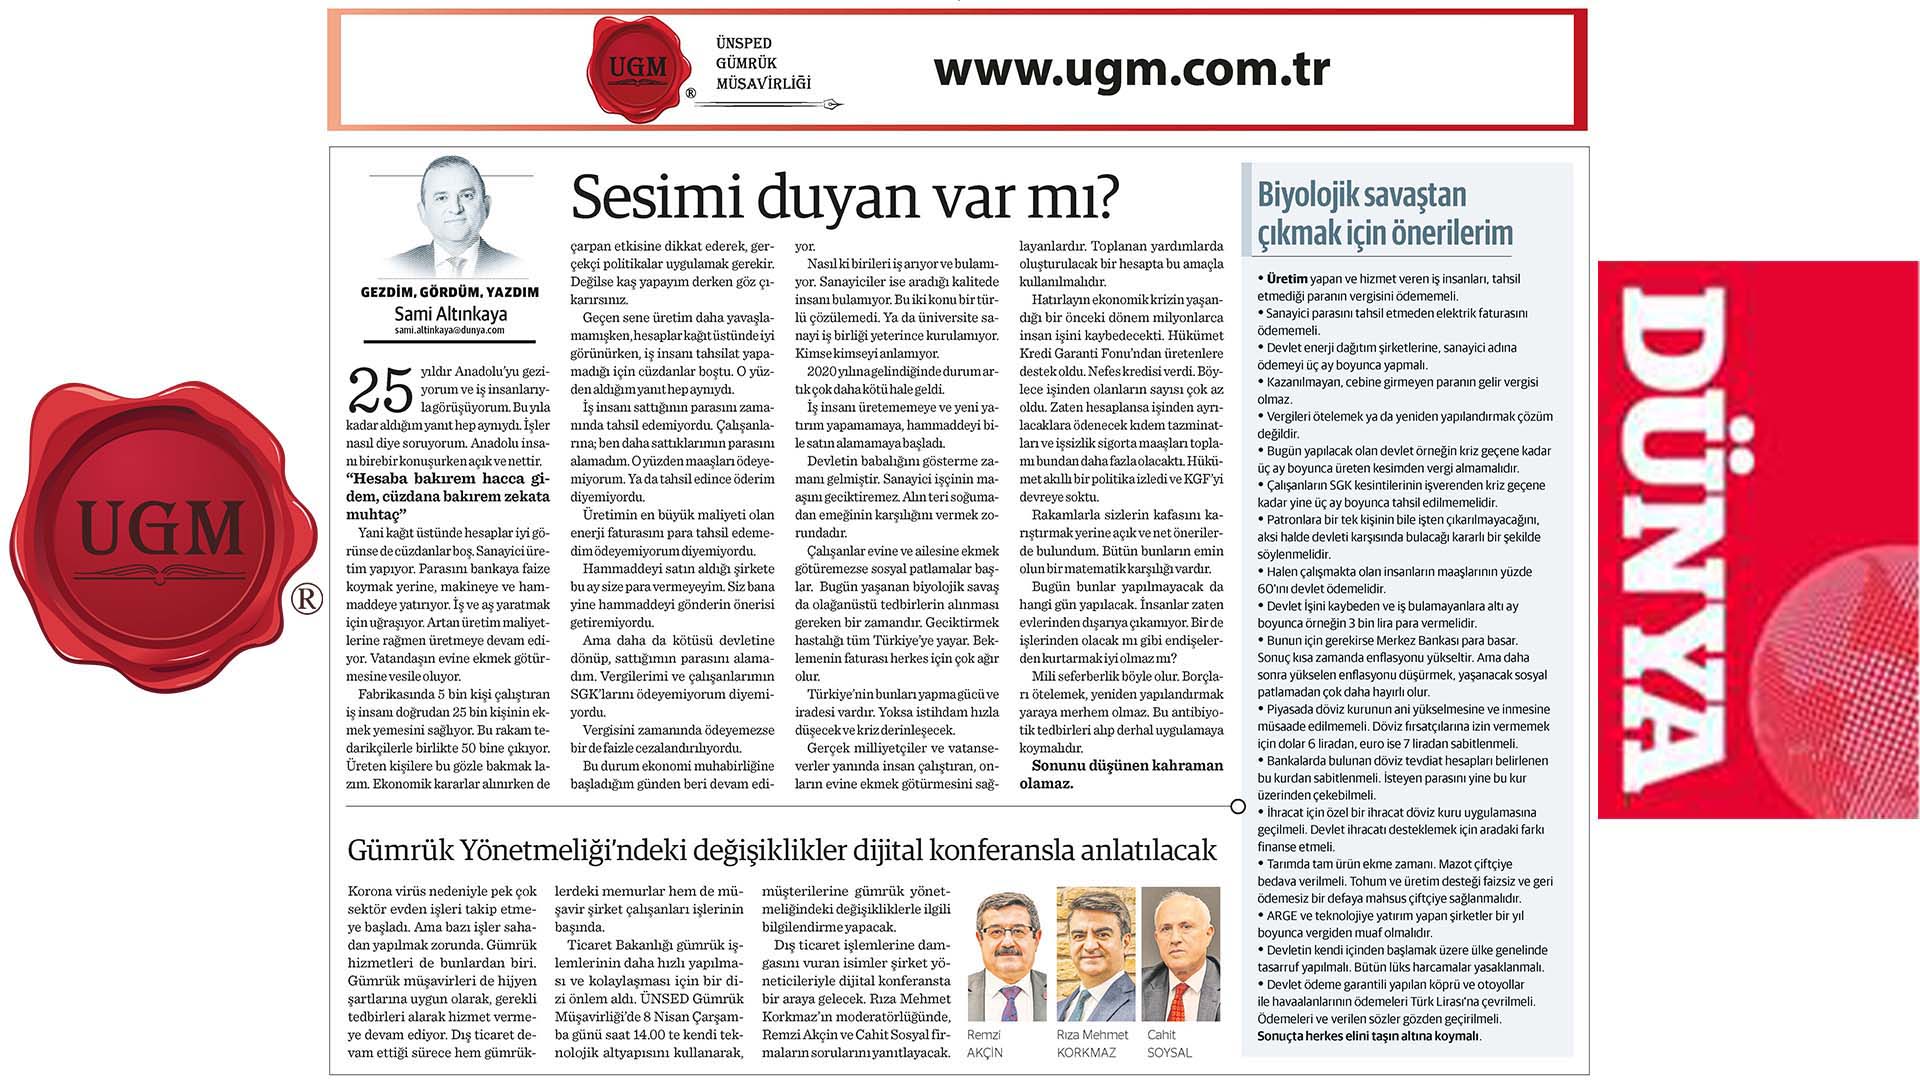 UGM Kurumsal İletişim Direktörümüz Sami Altınkaya'nın "Sesimi duyan var mı?" Başlıklı Yazısı,06.04.2020 Tarihinde Dünya Gazetesi'nde Yayınlandı.